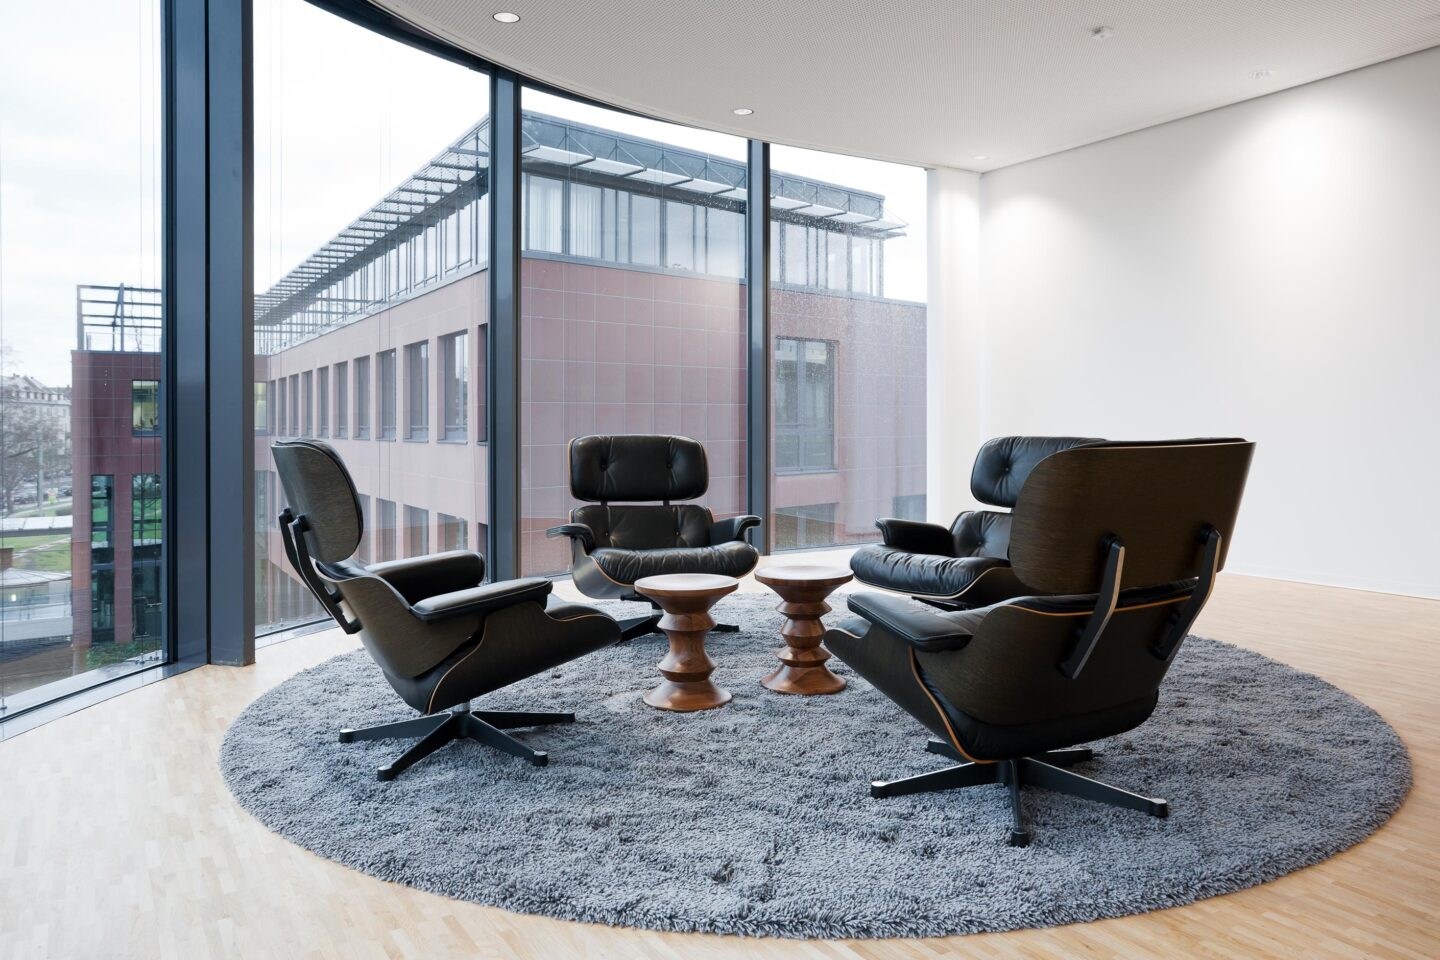 BGV-Versicherungen AG │ lounge area │ new workplaces